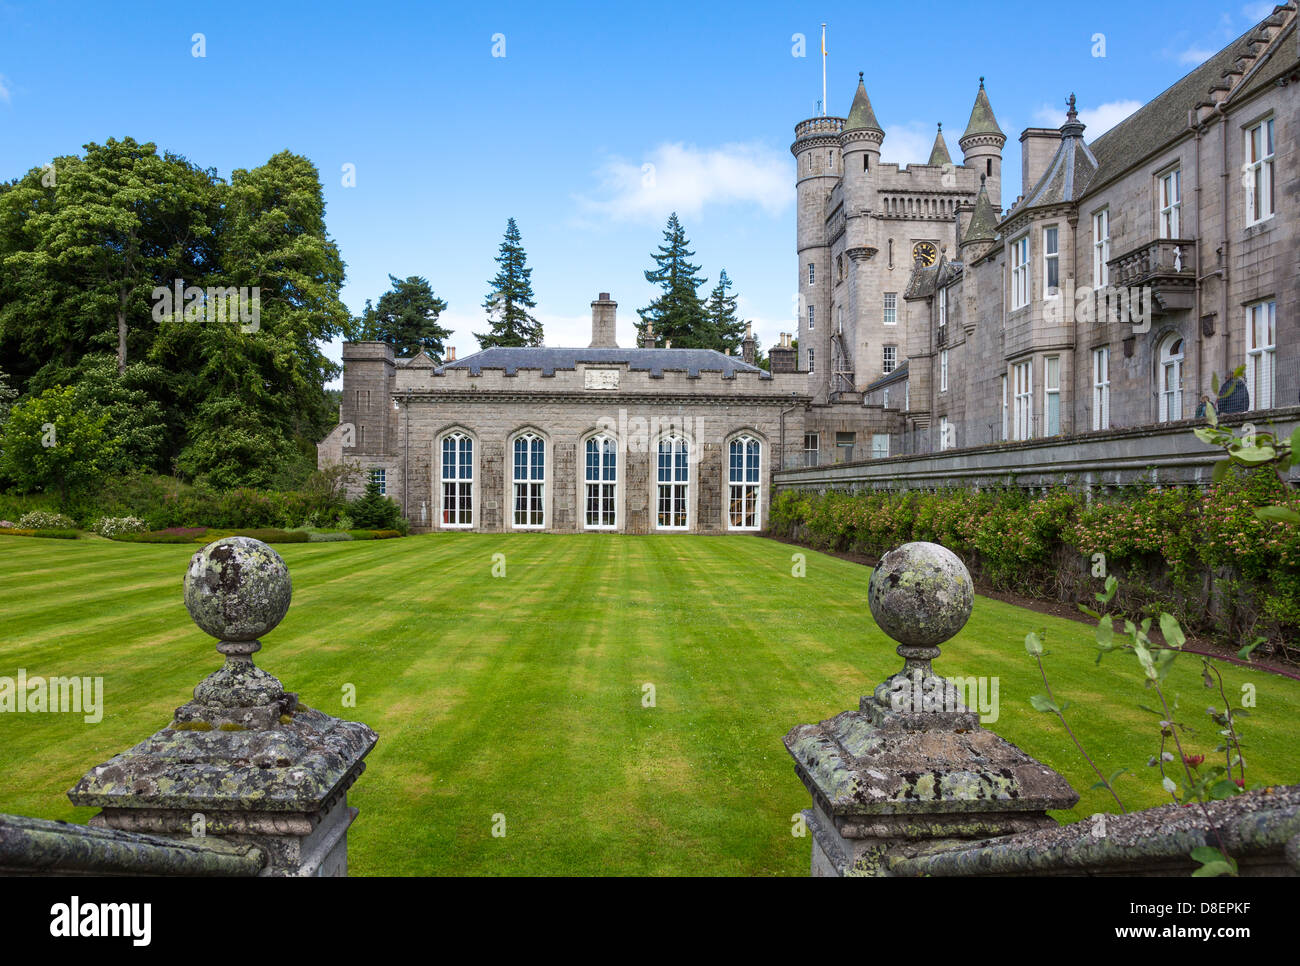 Gran Bretaña, Escocia, aberdeenshire, el castillo de Balmoral, residencia de verano de la familia real británica. Foto de stock